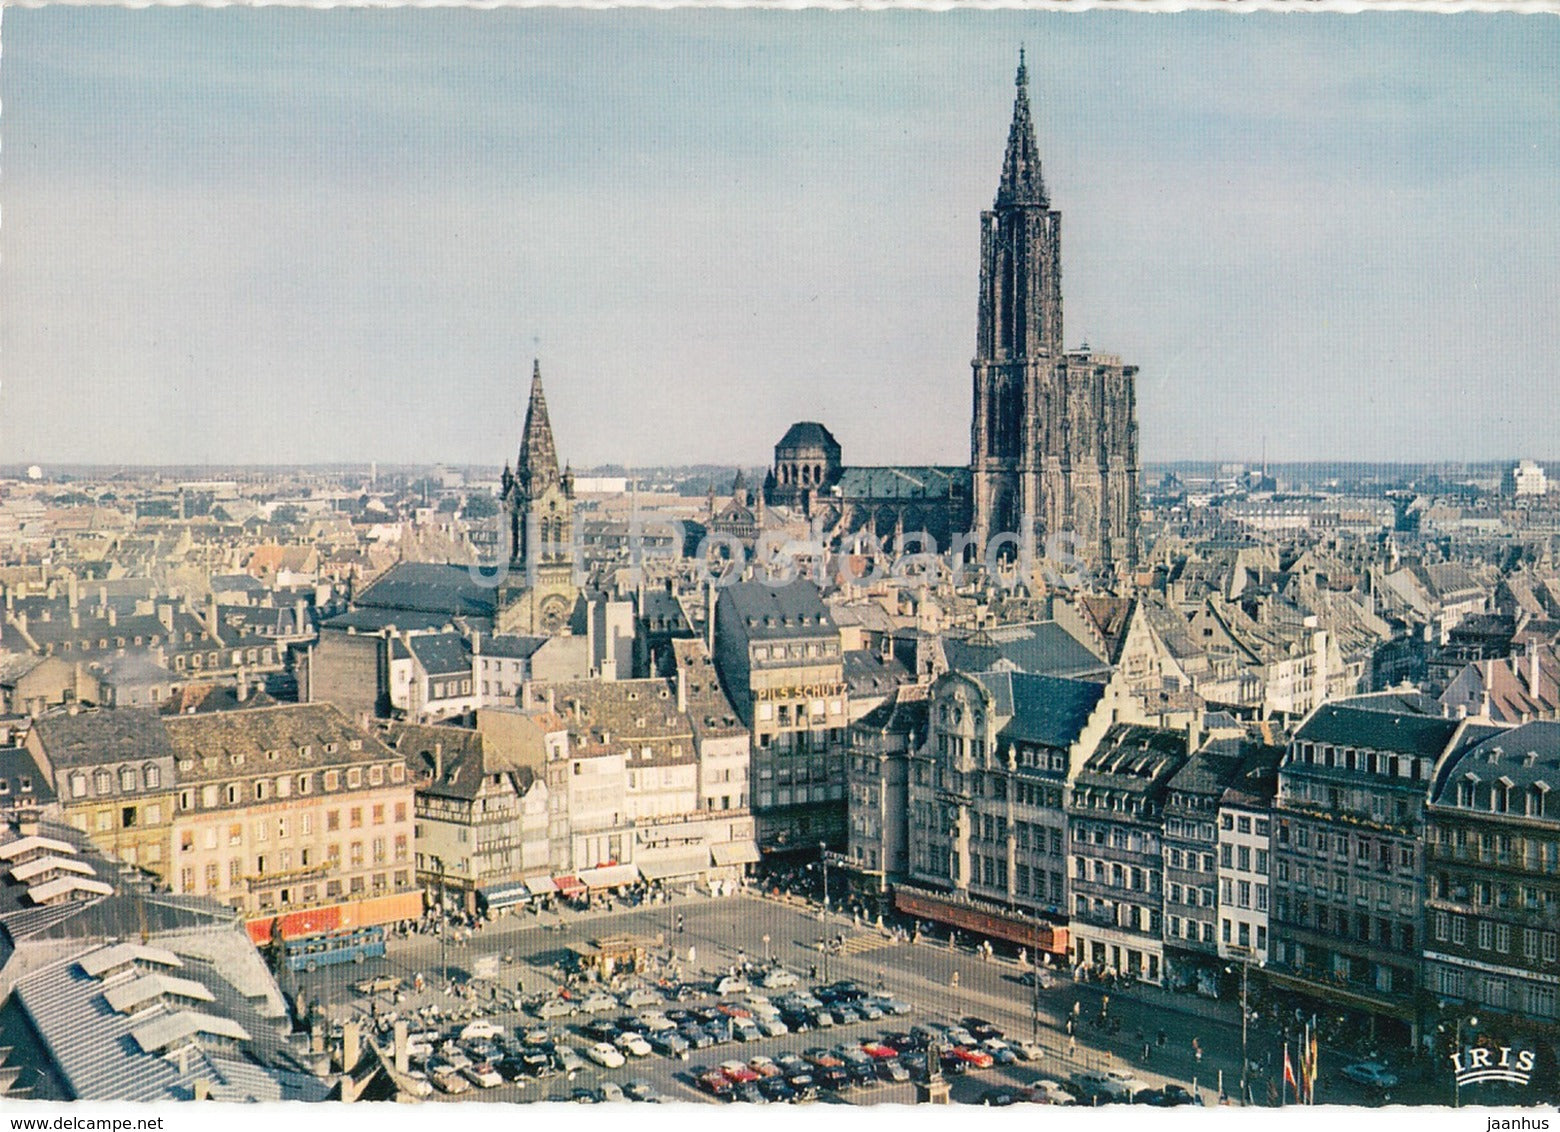 Strasbourg - Place Kleber et Cathedrale - cathedral - France - unused - JH Postcards